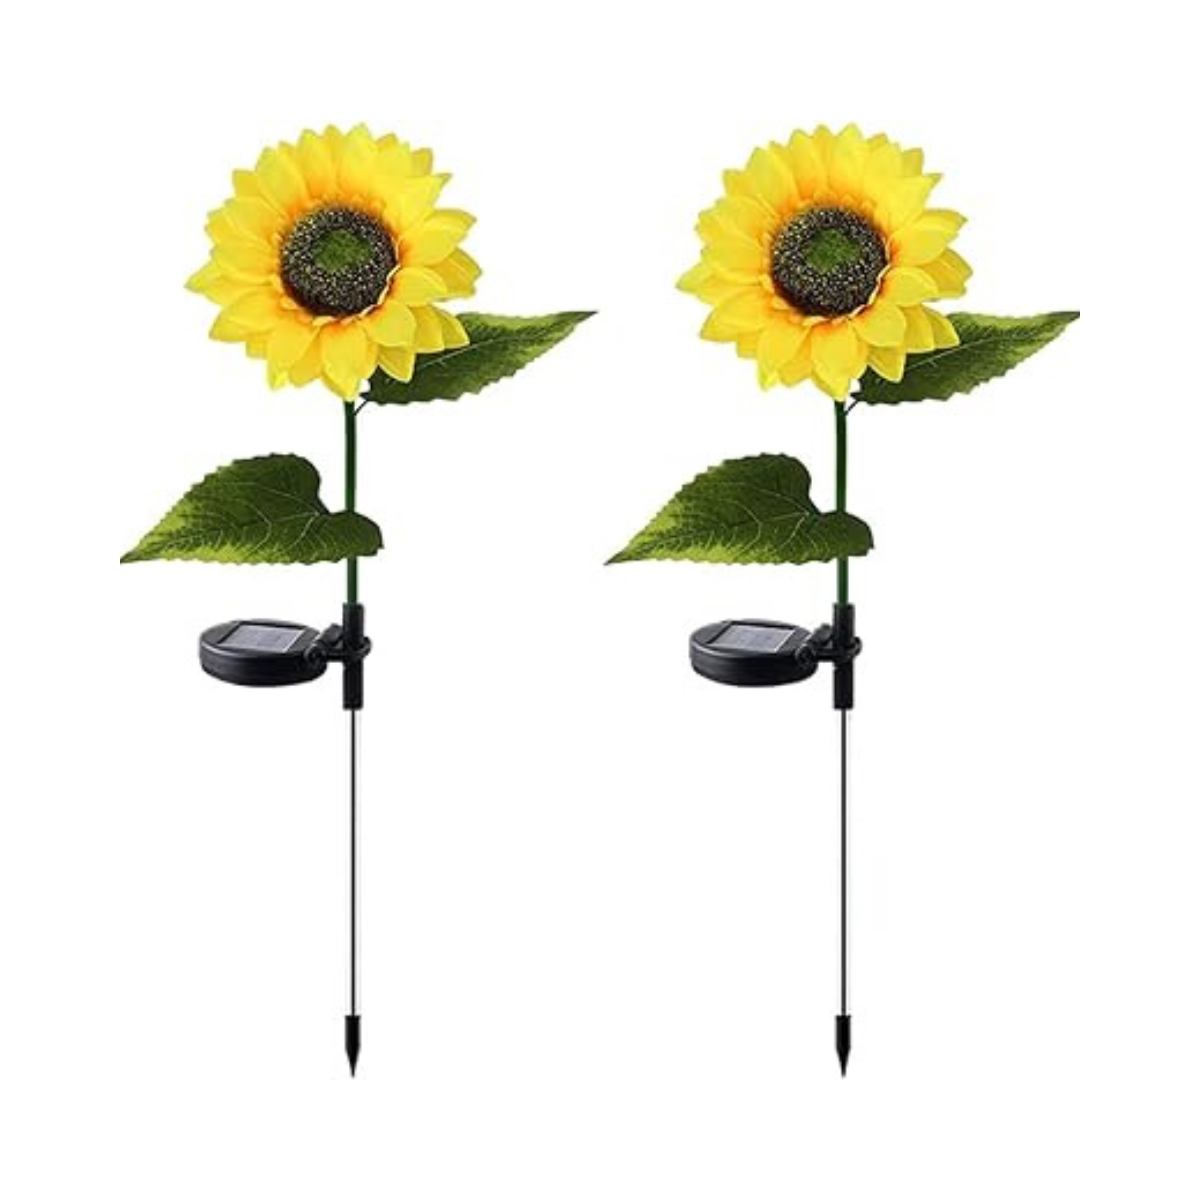 Flor de luces solar diseño de girasol